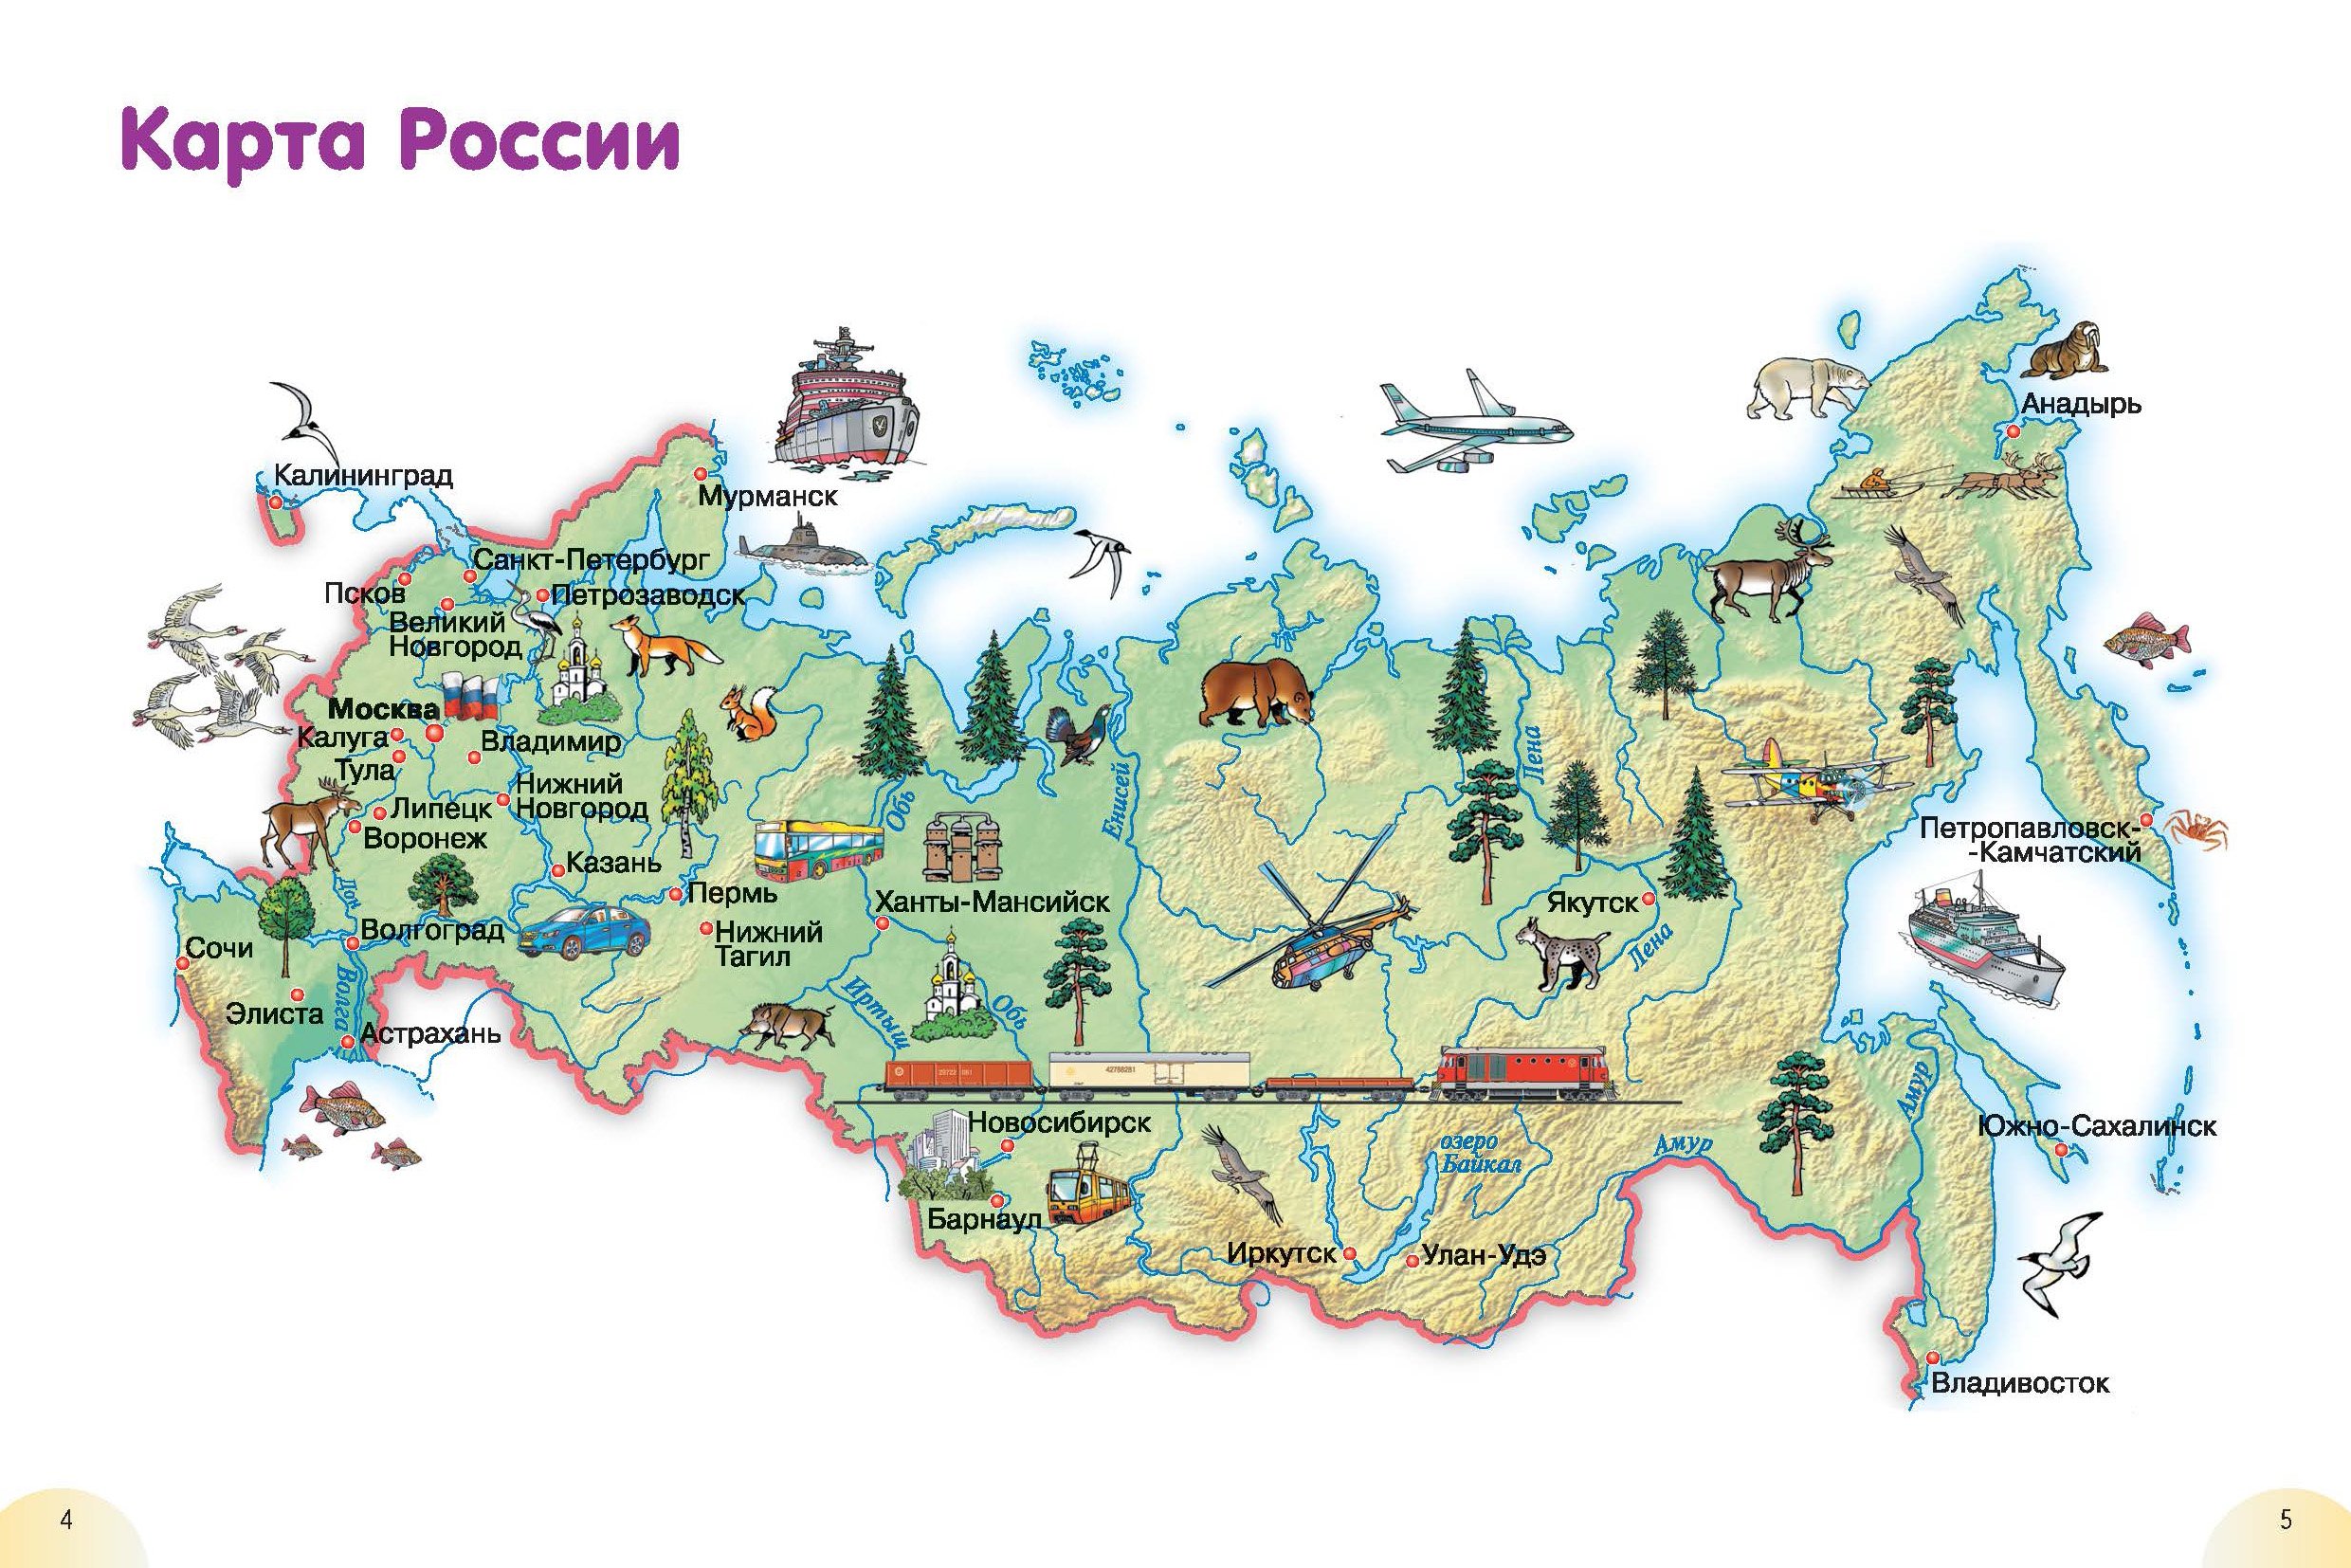 Название района города в котором ты живешь. Географическая карта России для детей. Карта России для детей 1 класса. Карта России с городами для детей 1 класса. Карта России для детей дошкольного возраста.